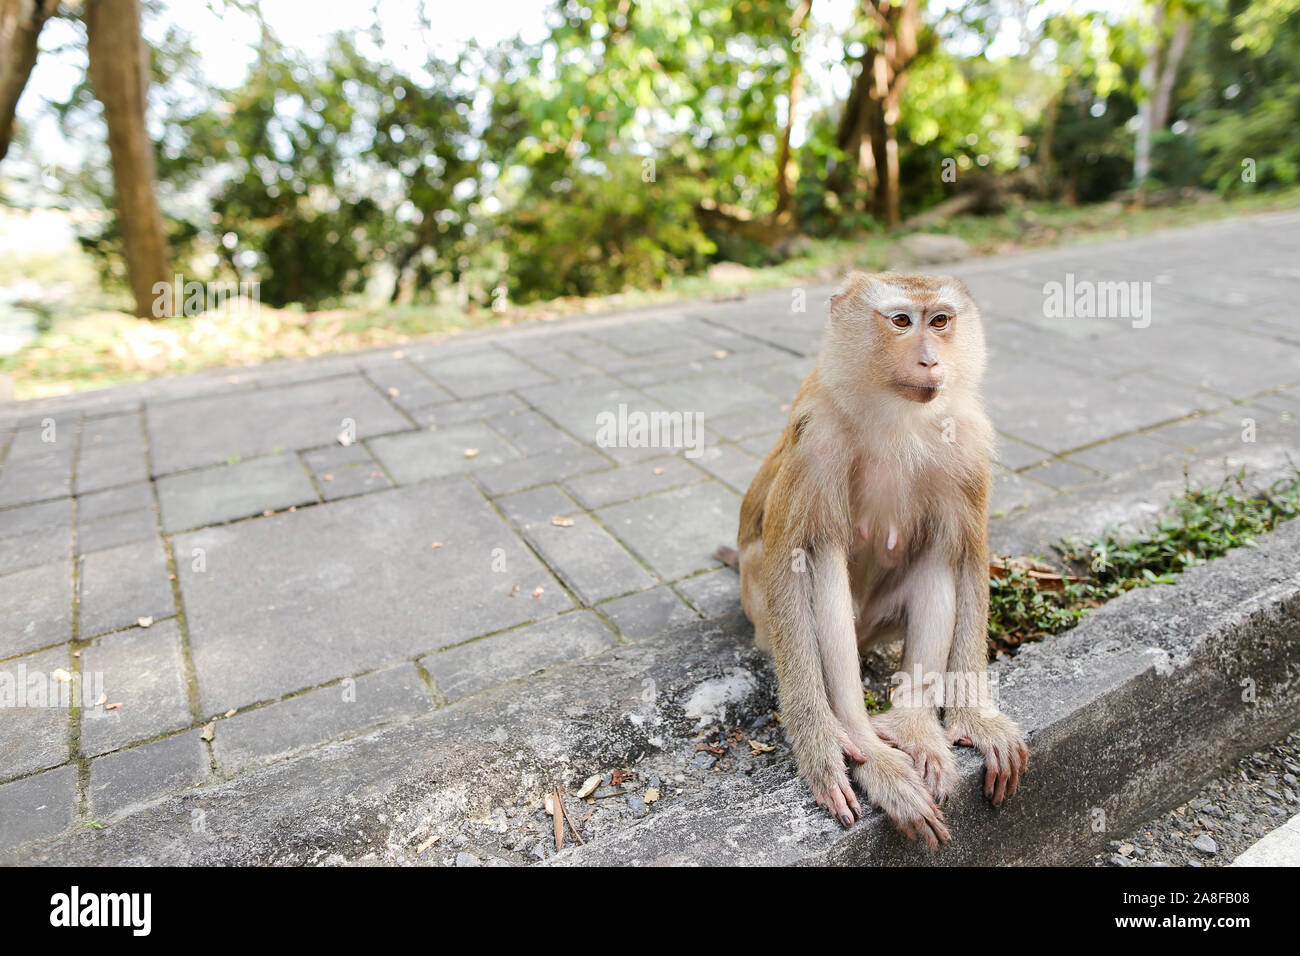 Peu cute macaco assis sur route en Thaïlande. Banque D'Images